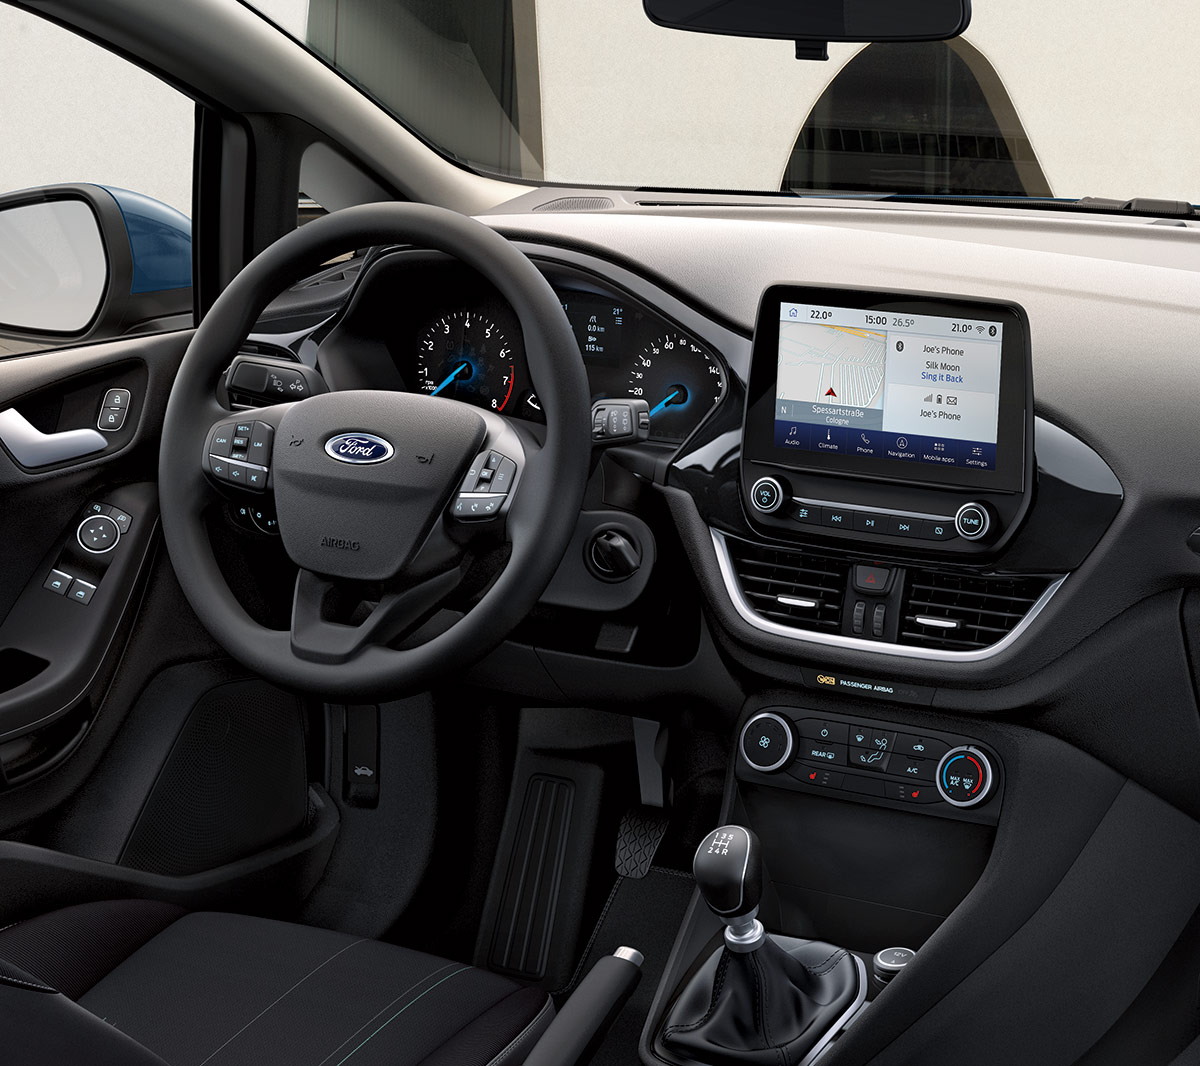 Ford Fiesta Van interior with steering wheel detail